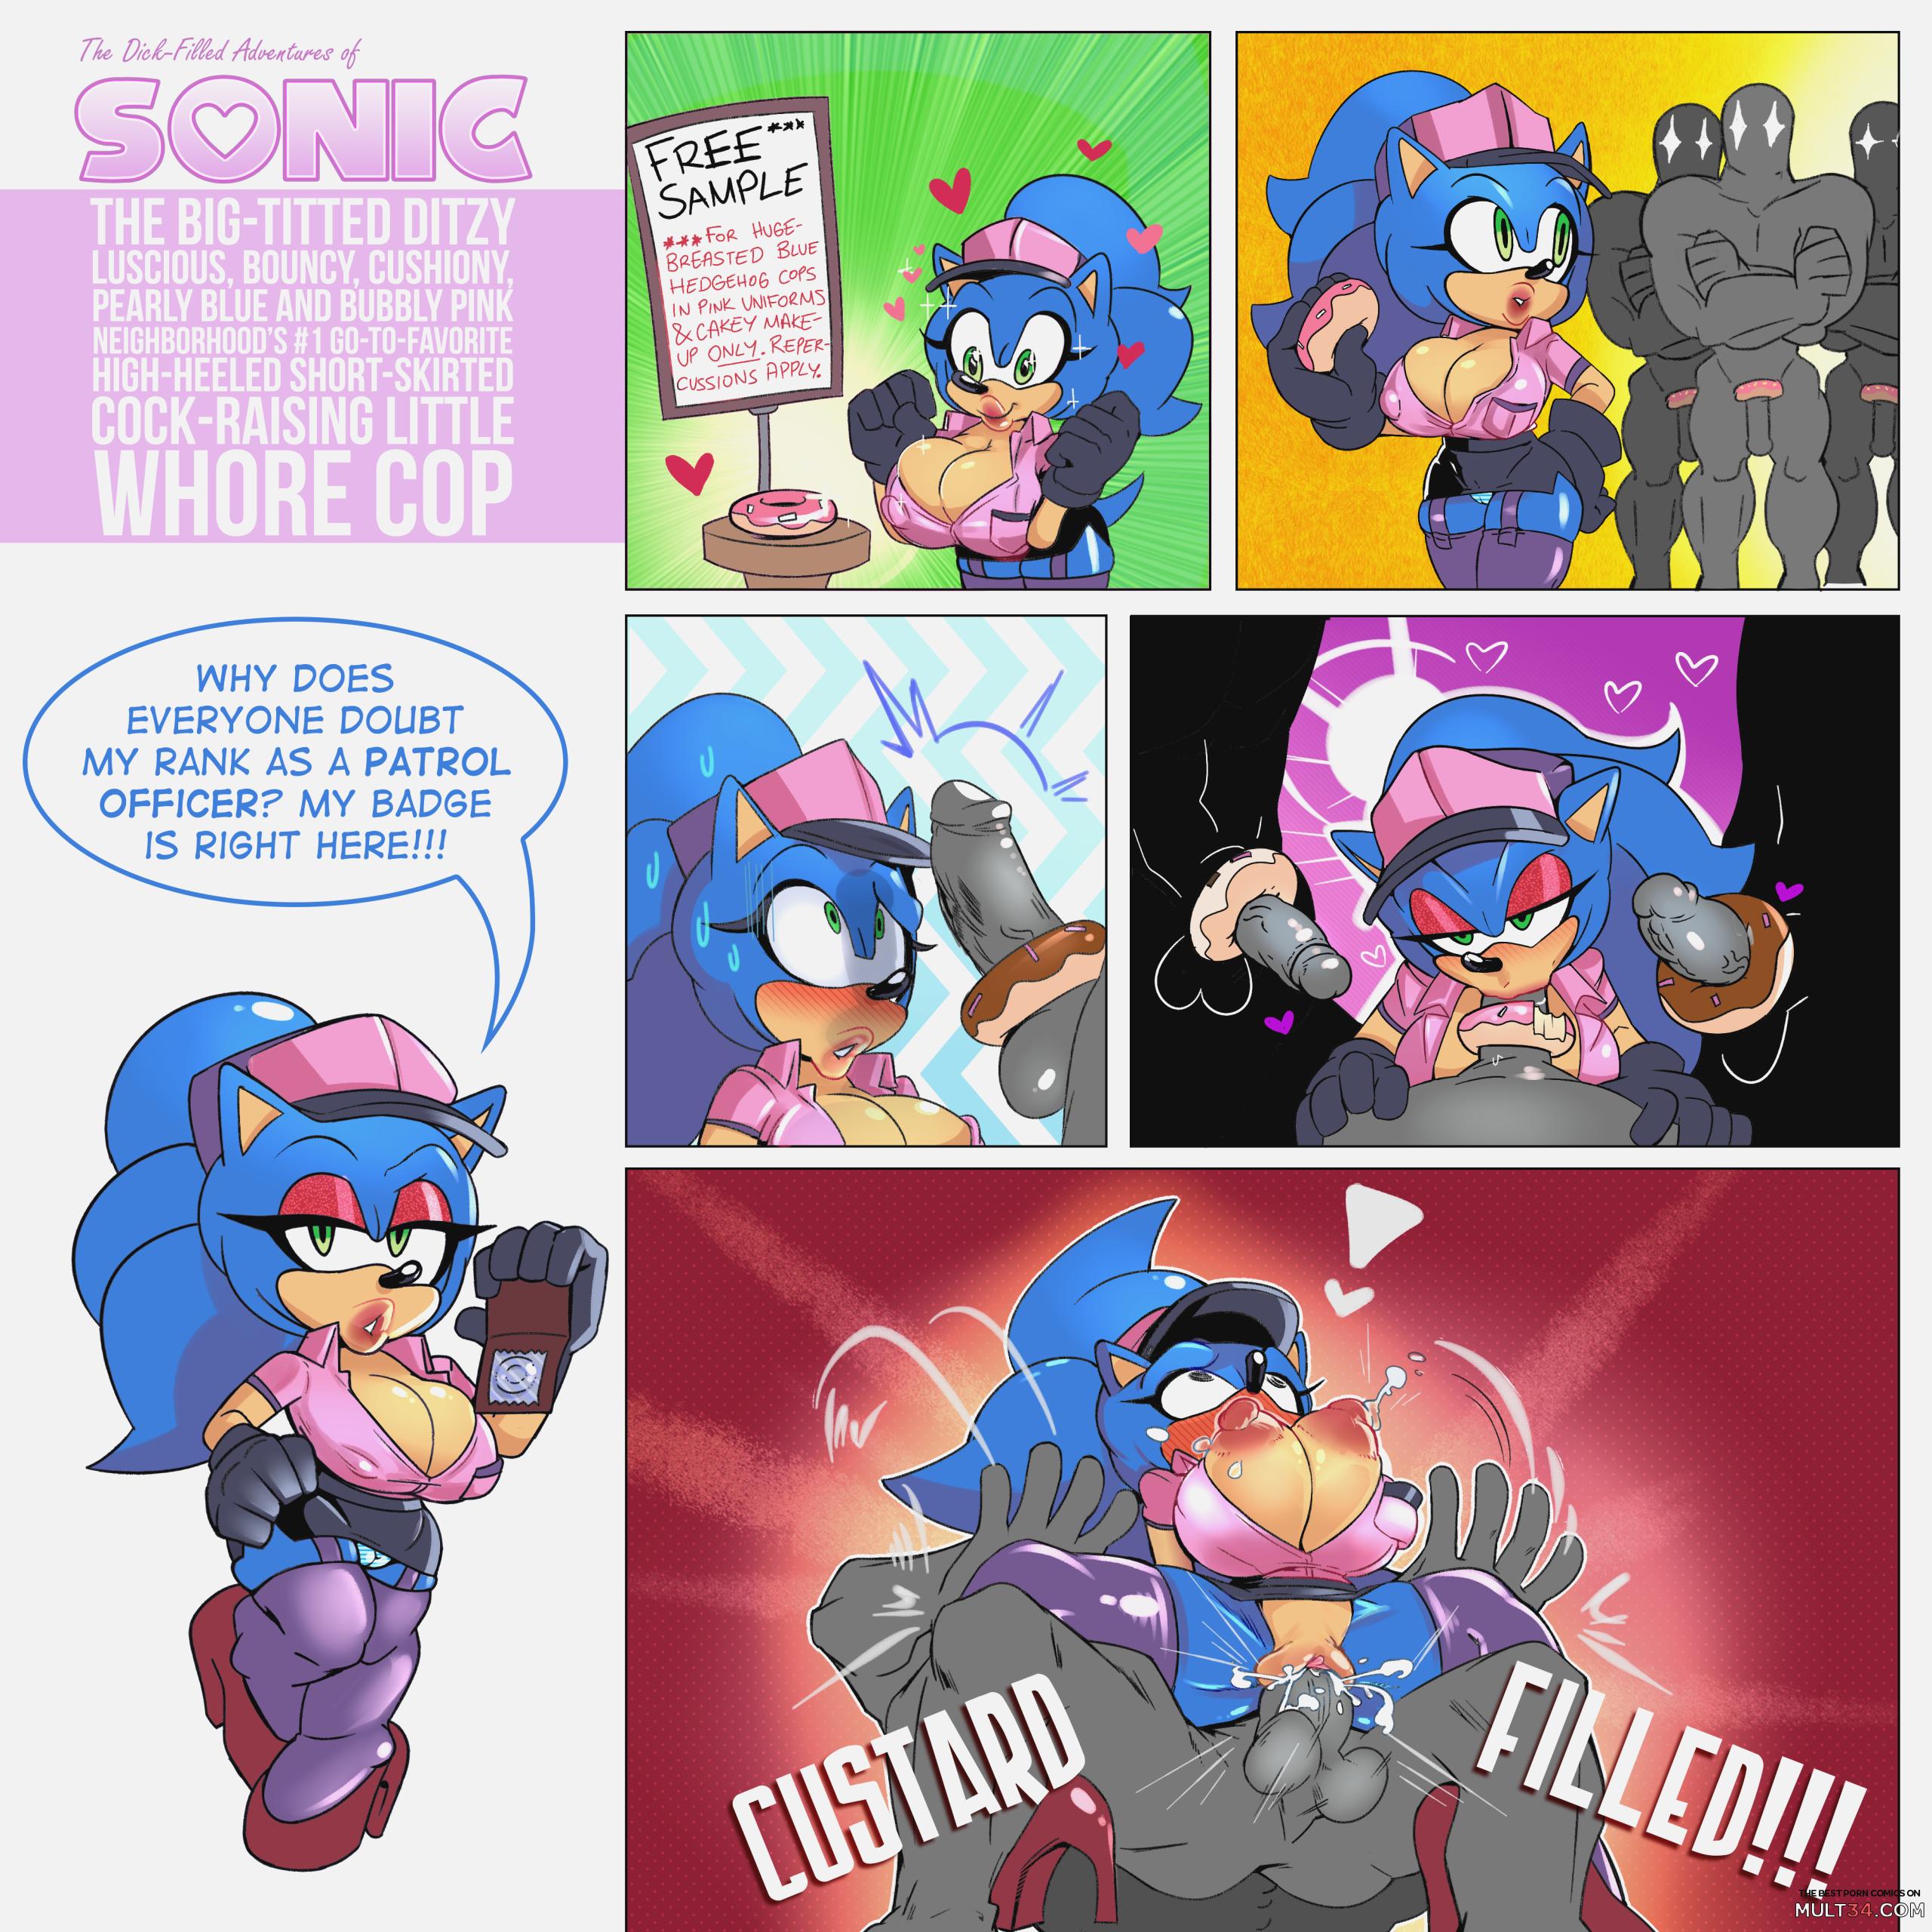 2560px x 2560px - Sonic The Whore Cop porn comic - the best cartoon porn comics, Rule 34 |  MULT34